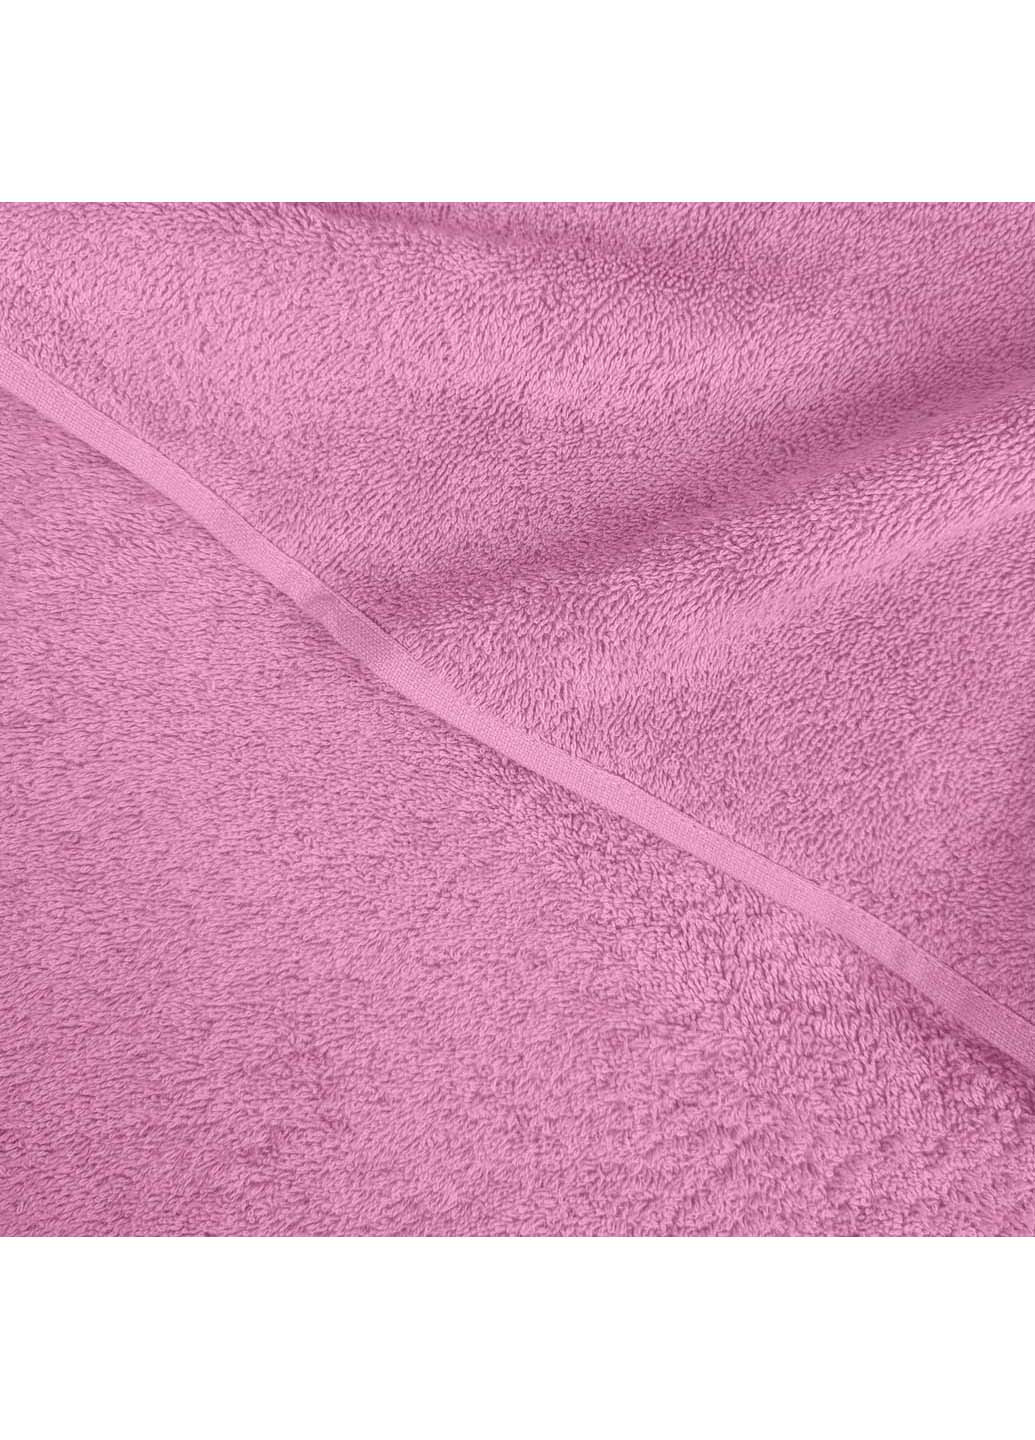 Cosas полотенца махровые candy 2 шт розовый производство -